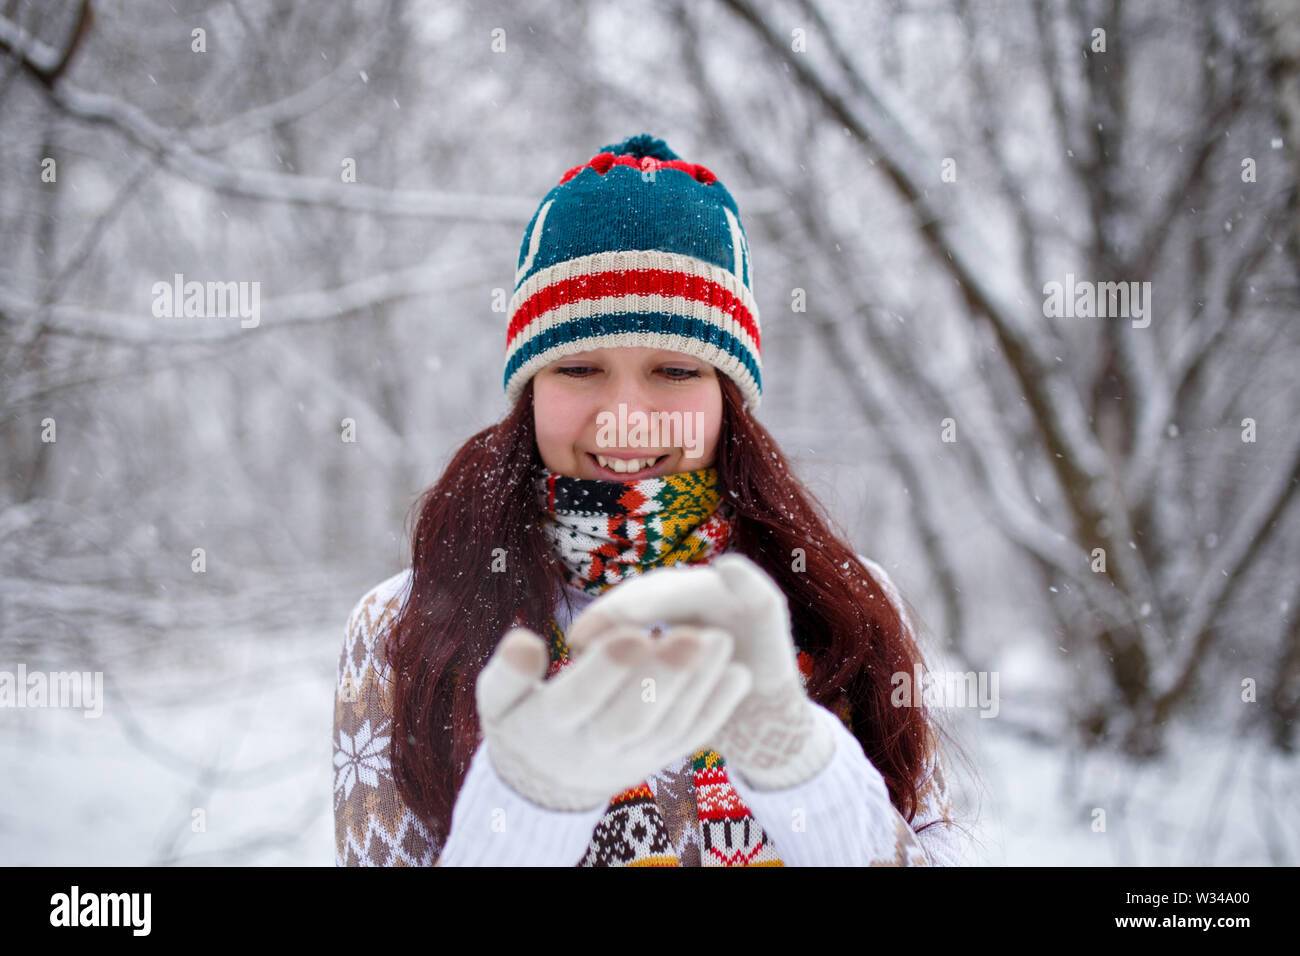 Foto der lächelnde Frau auf gestrickte Mütze und Schal fallende Schneeflocken im Winter Wald bei Tag Stockfoto